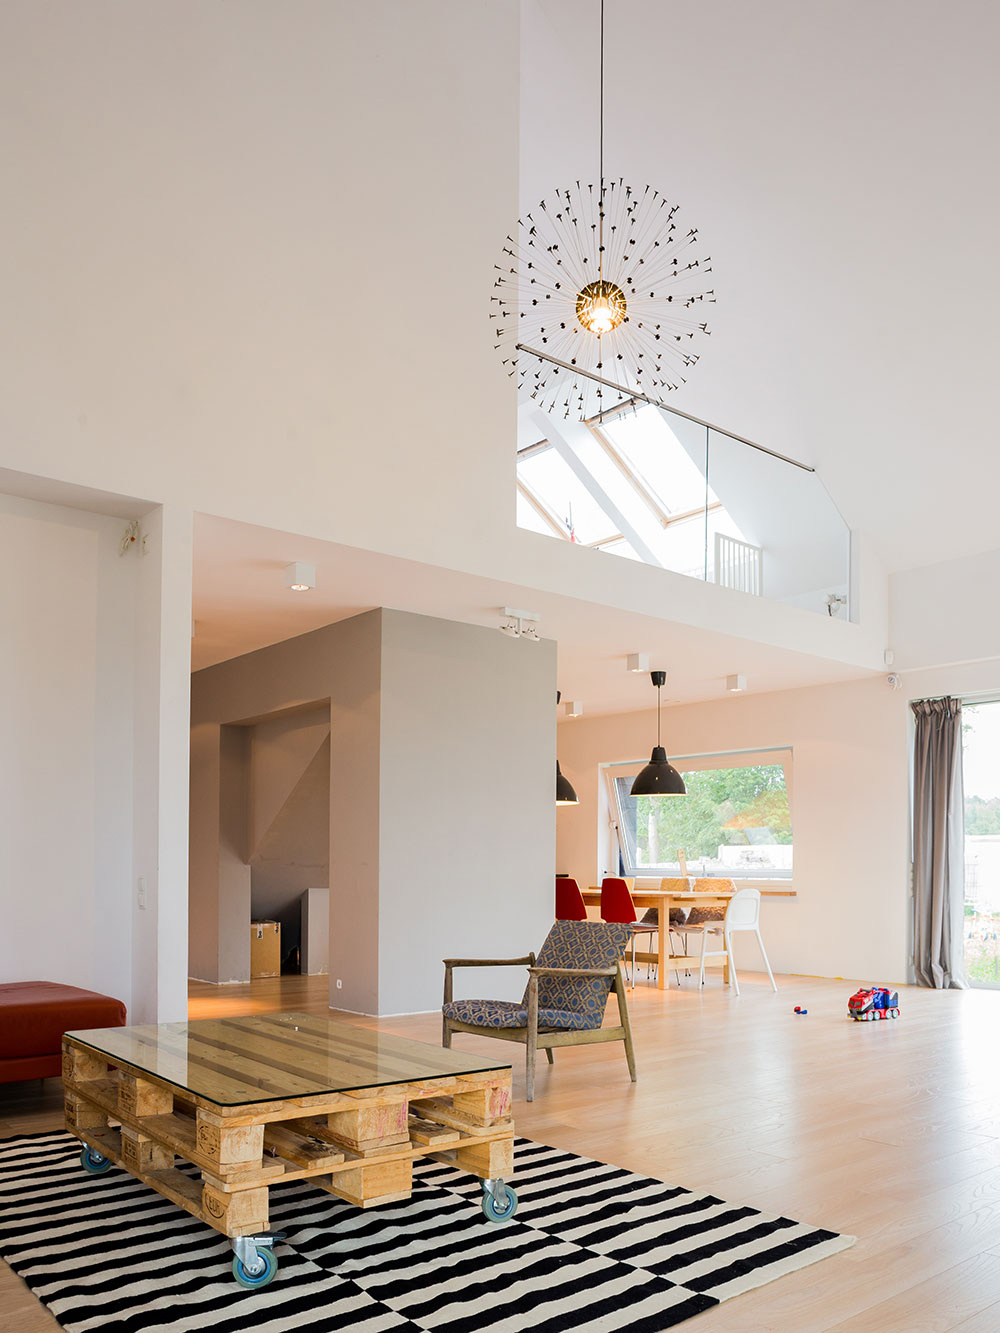 Energeticky úsporný dom nesie prvky vidieckej architektúry i moderného minimalizmu